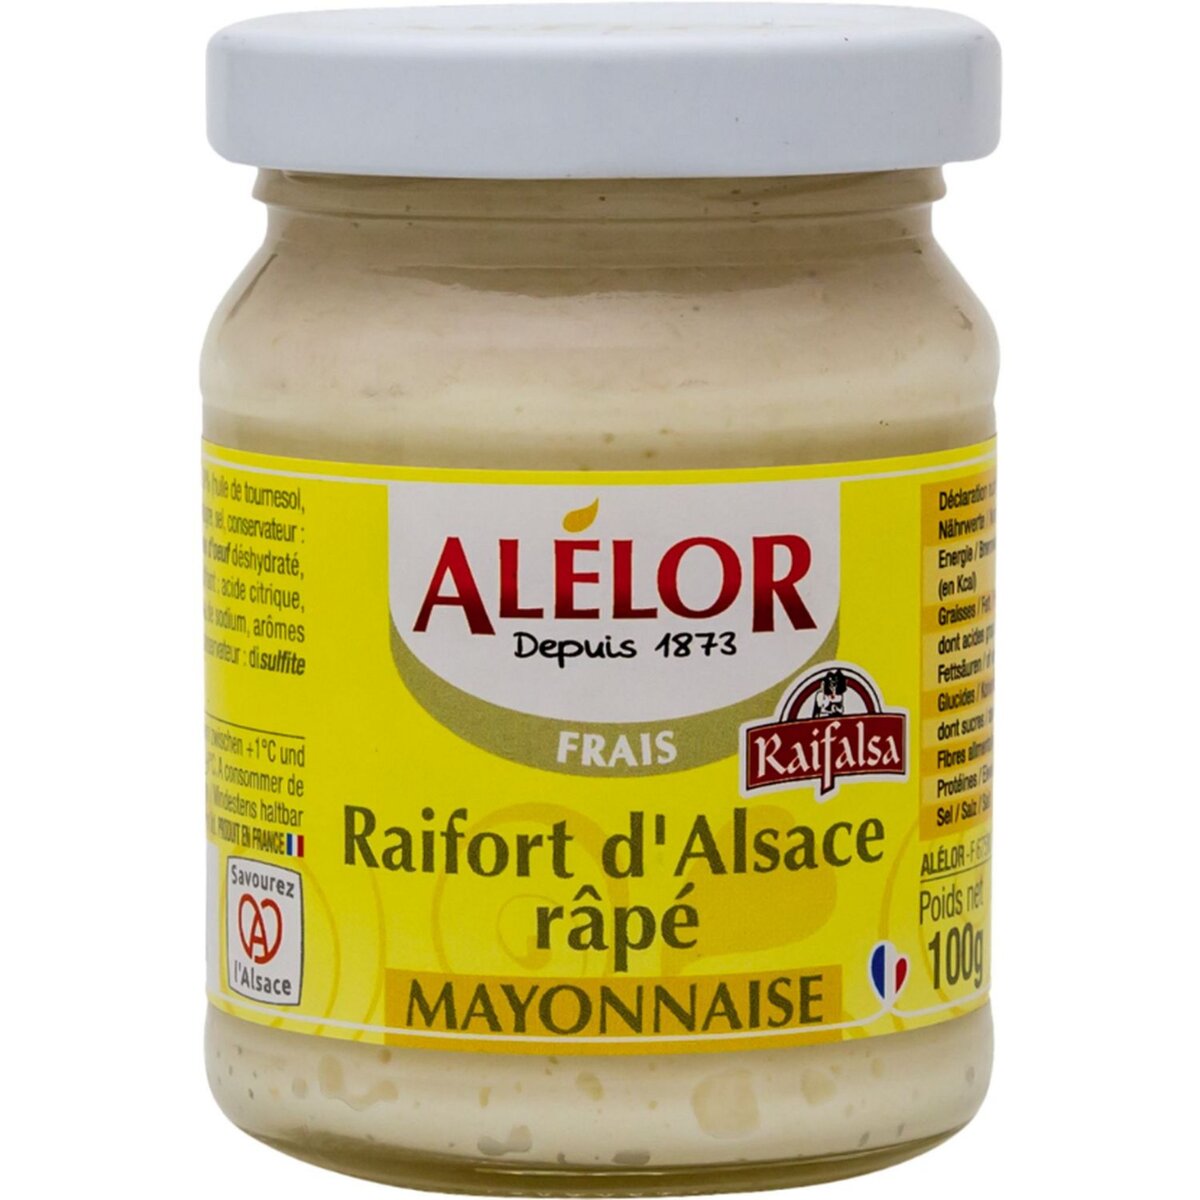 ALELOR Raifort d'Alsace râpé mayonnaise 100g